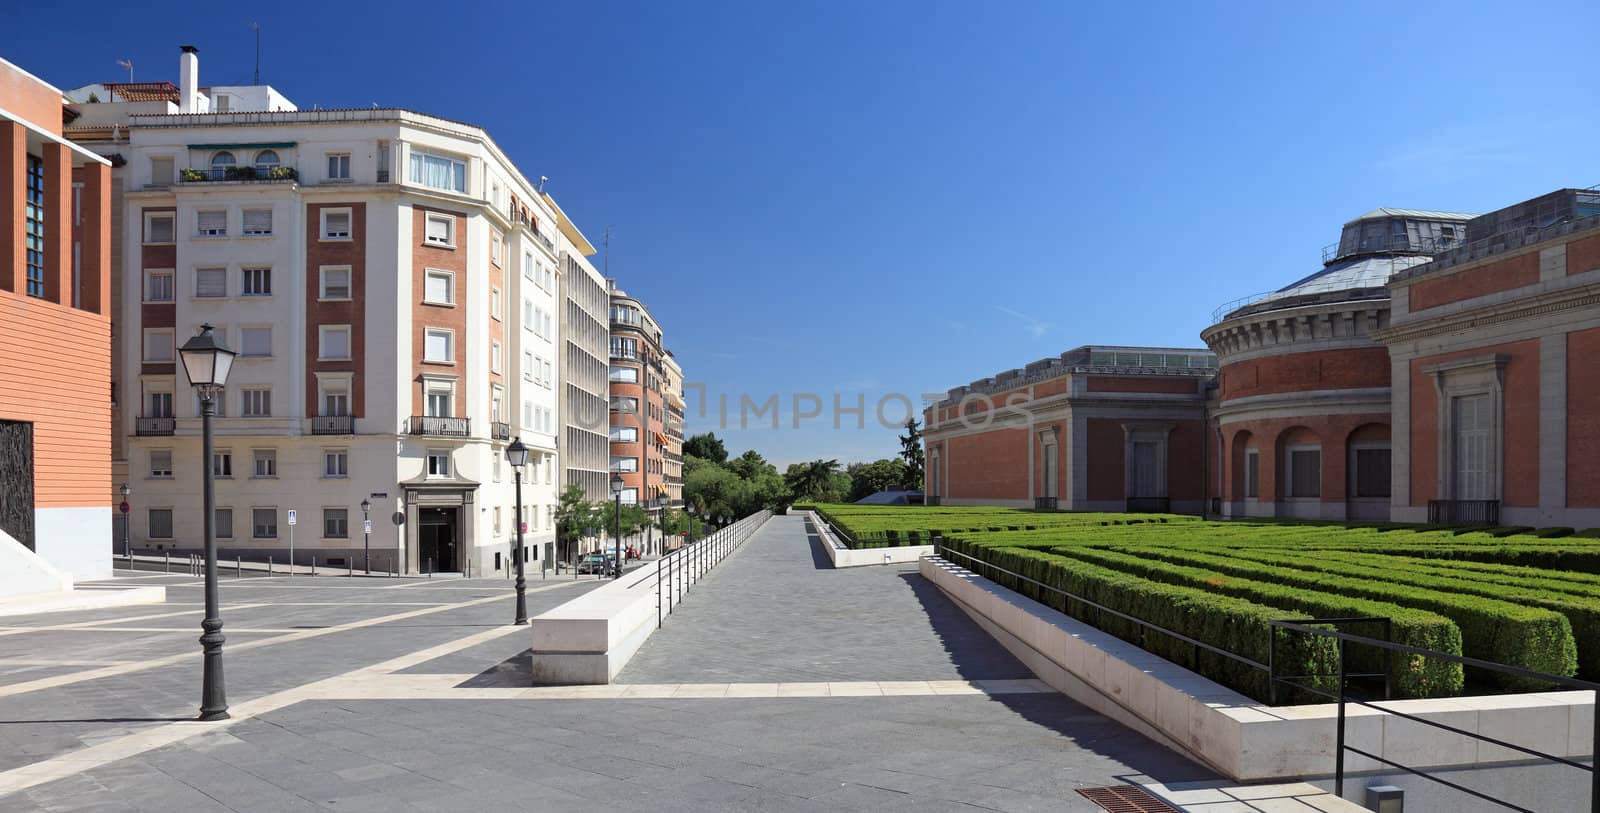 The modern building of Prado museum in Madrid, Spain. by borodaev